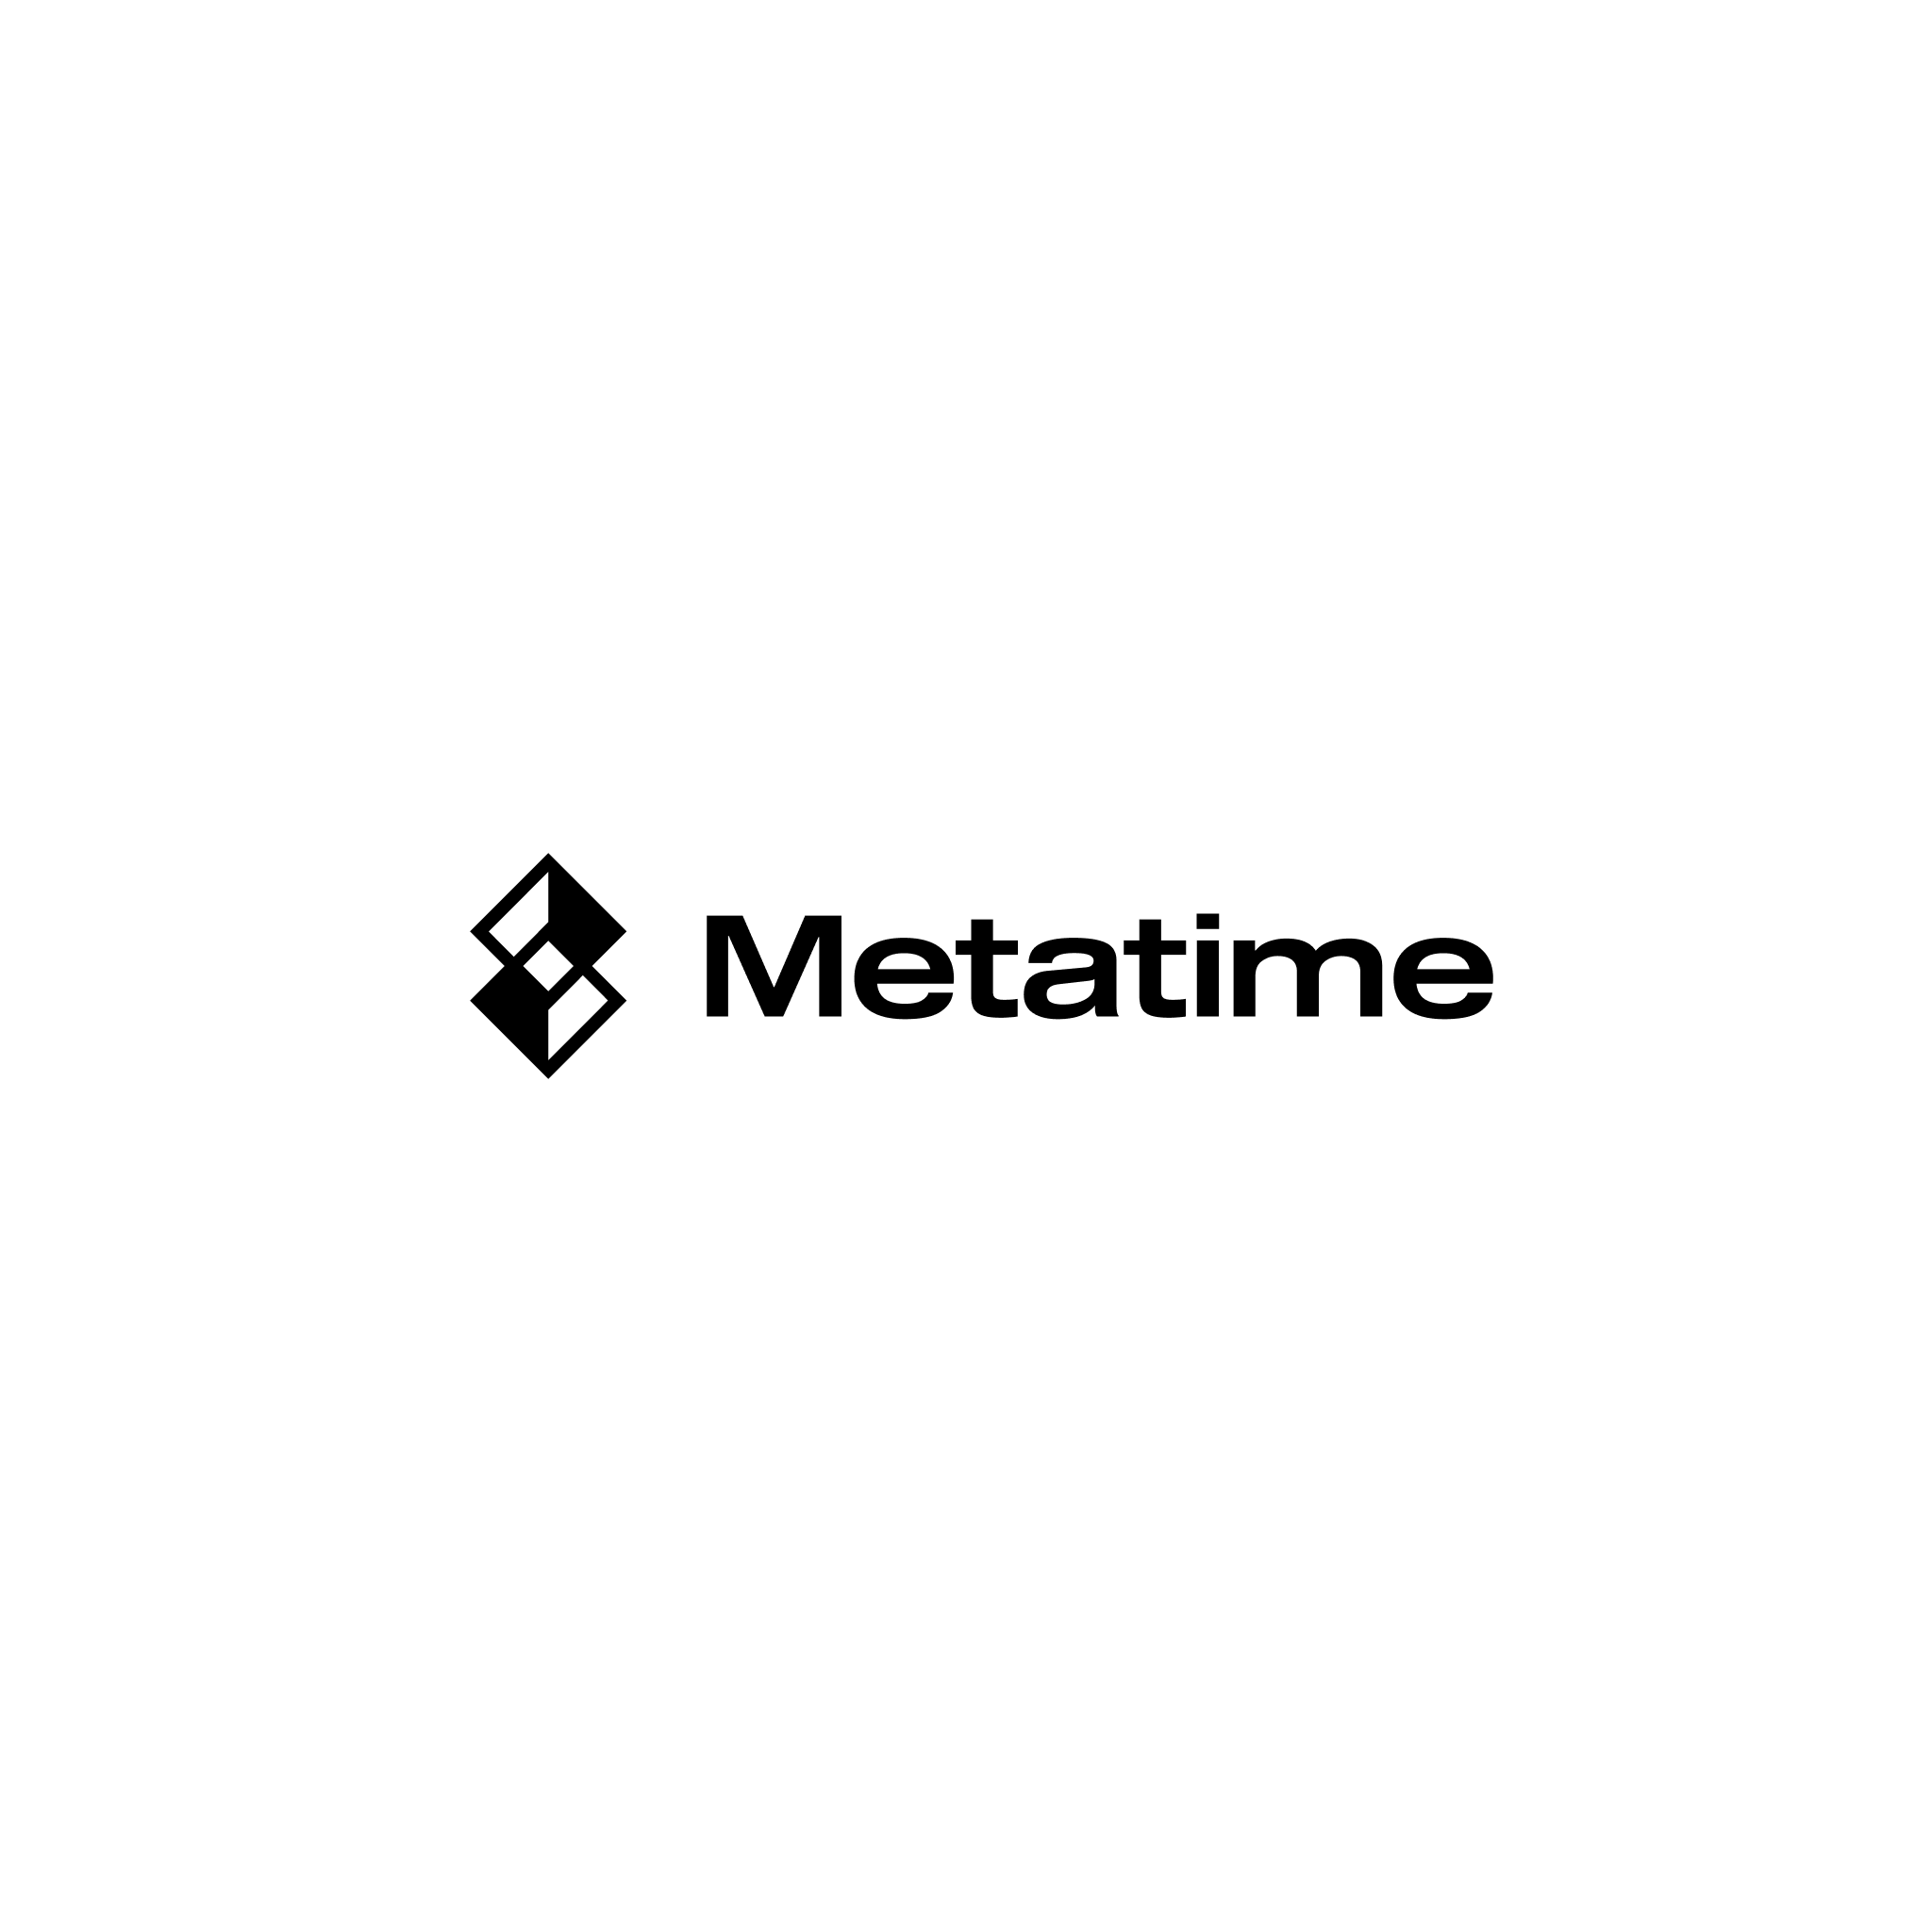 Celebrating Metatime Coin Listing: $22,500 USDT Grand Airdrop On Bybit!